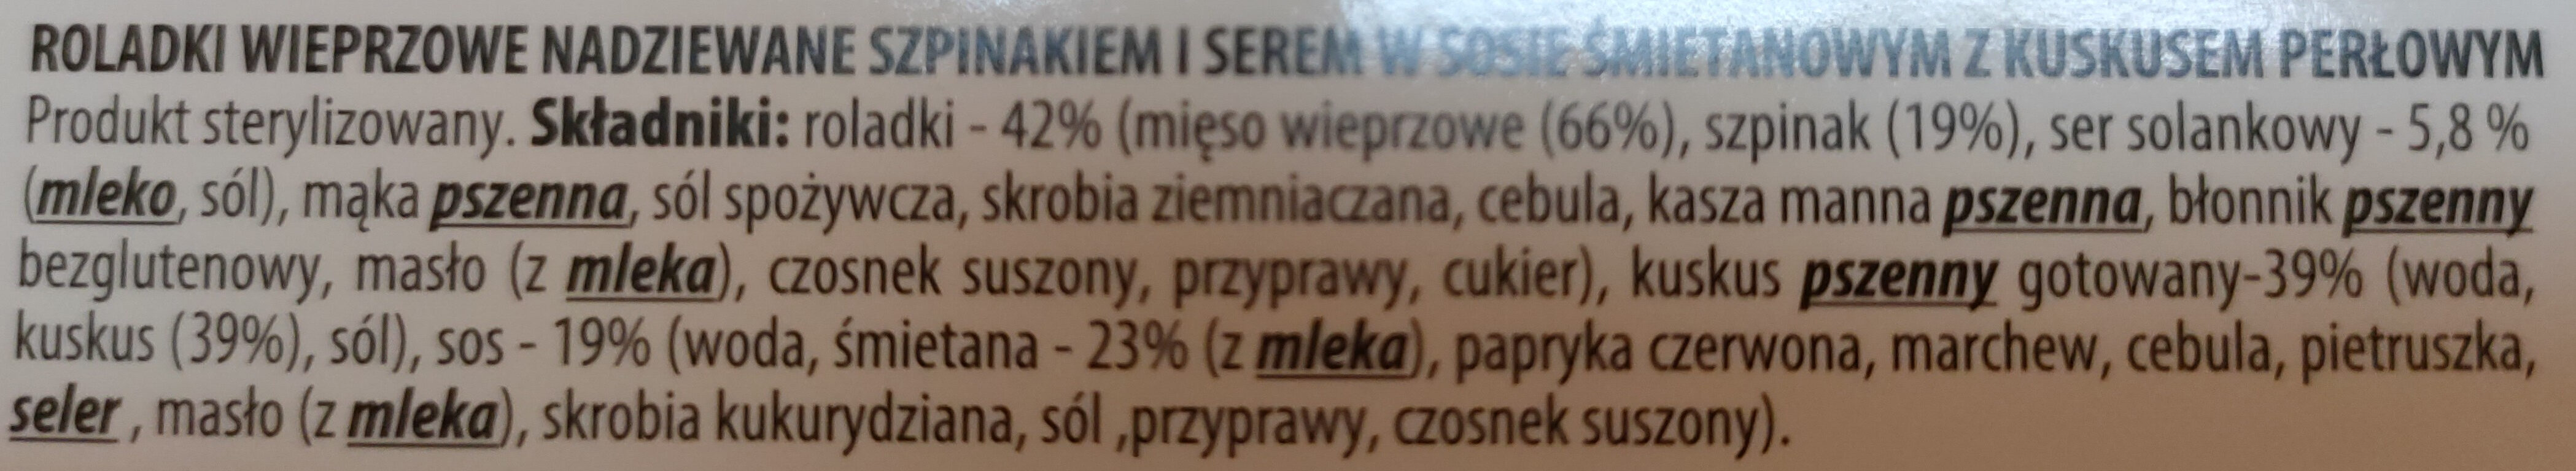 Sokołów premium Danie Gotowe Roladki wierprzowe - Ingredientes - pl